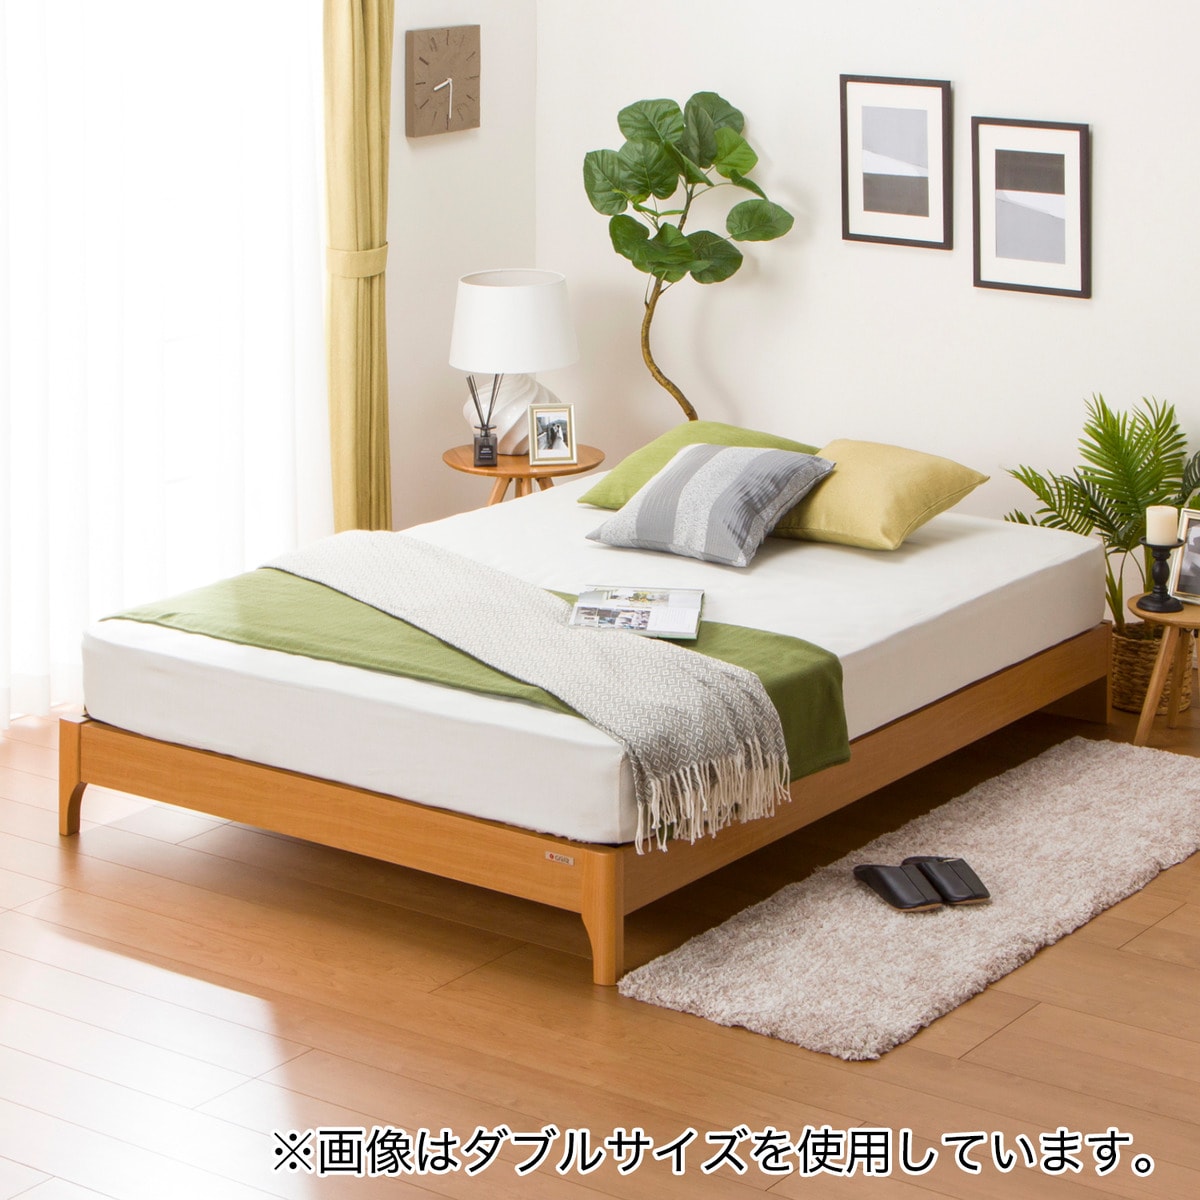 売約済】無印ベッドフレーム、マットレスセット - 神奈川県の家具